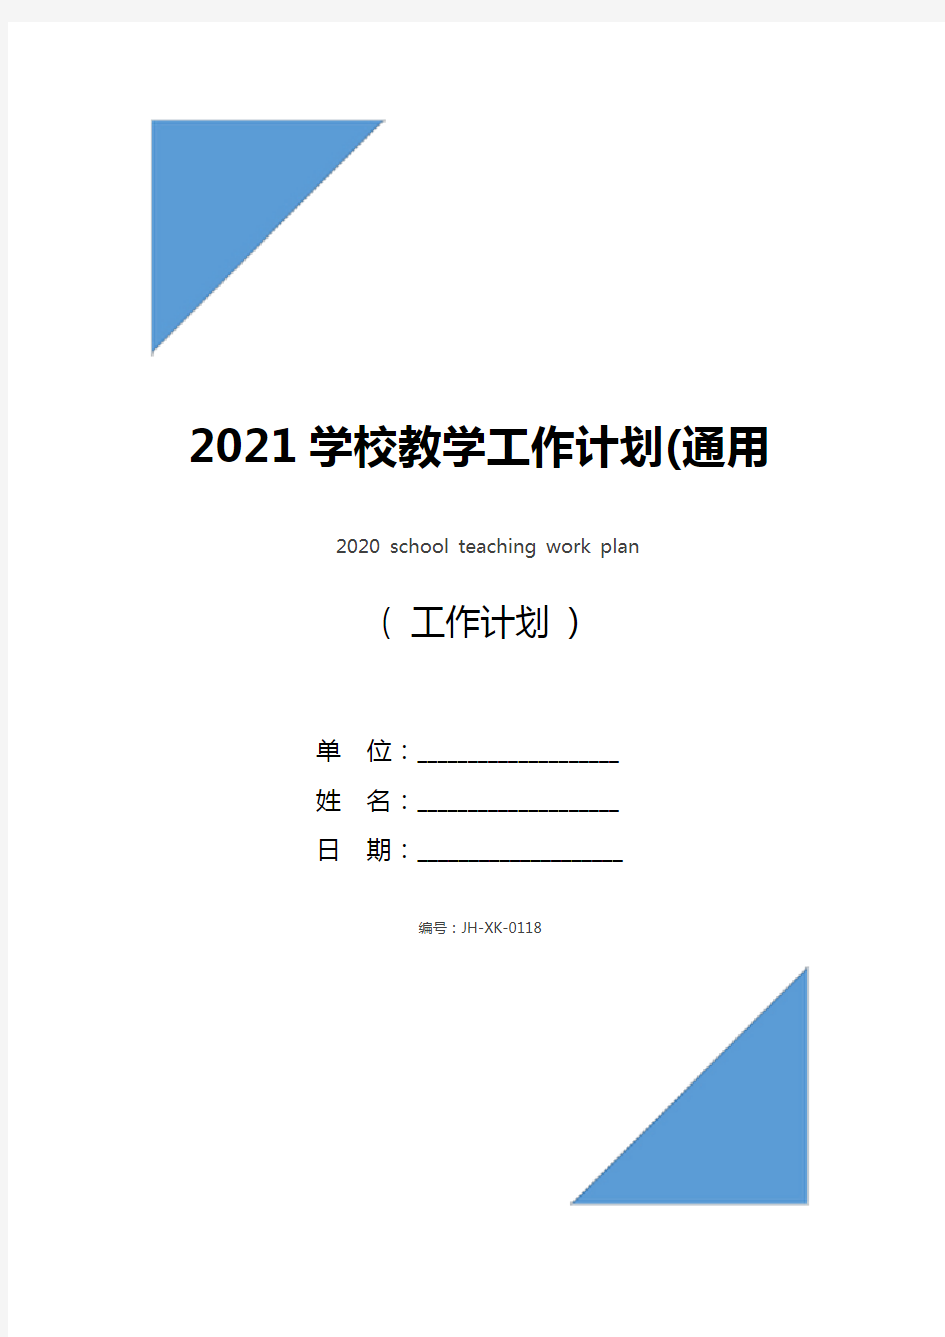 2021学校教学工作计划(通用版)